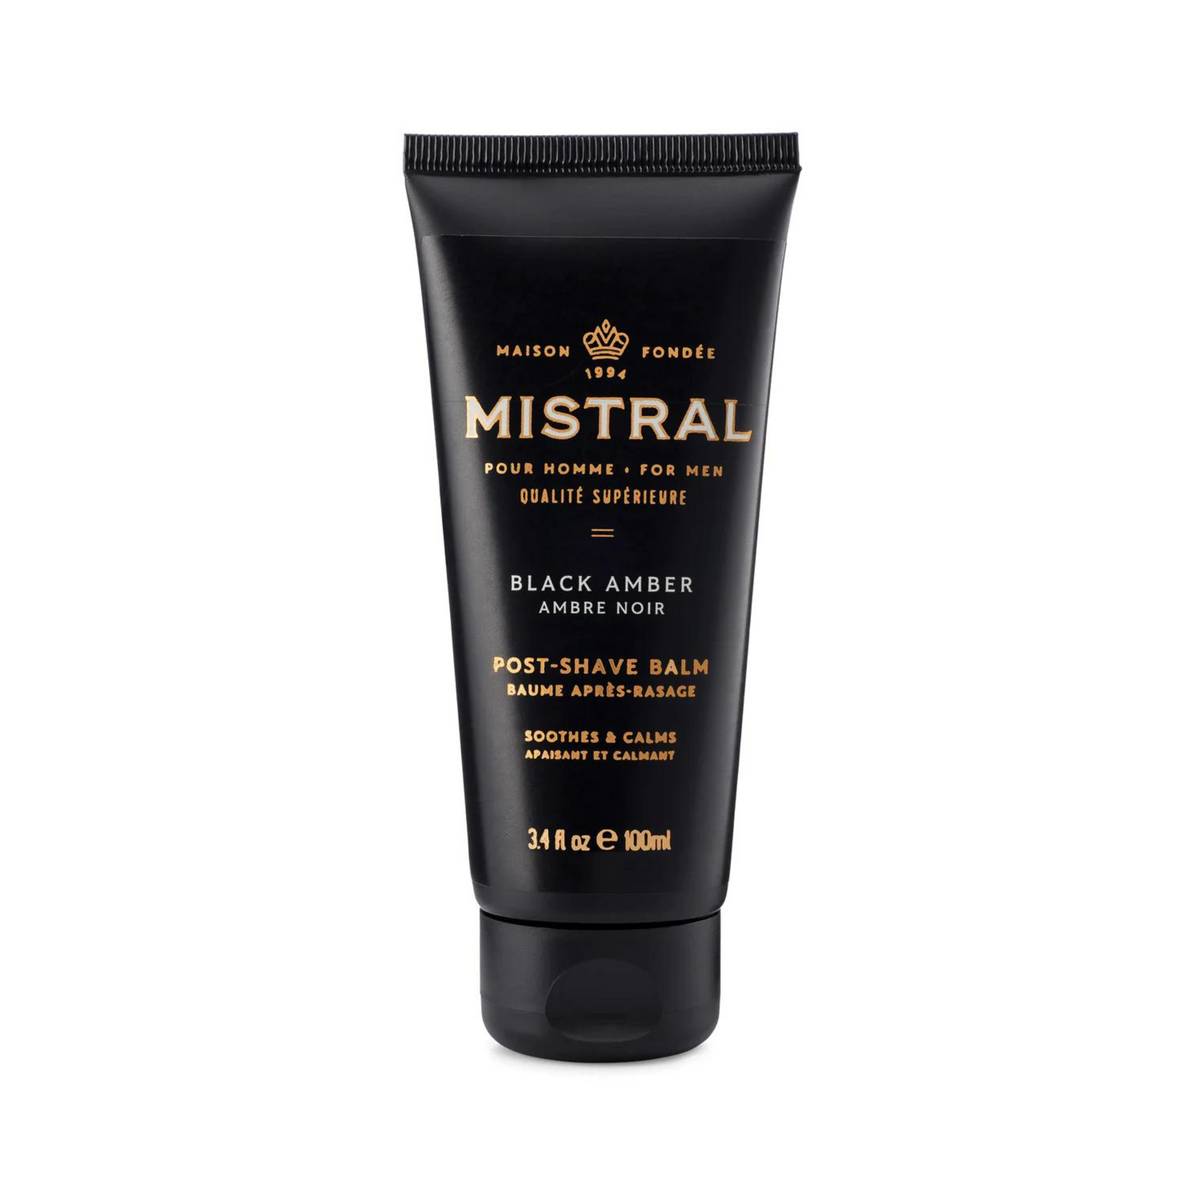 Primary Image of Mistral Black Amber Post-Shave Balm (3.4 fl oz)